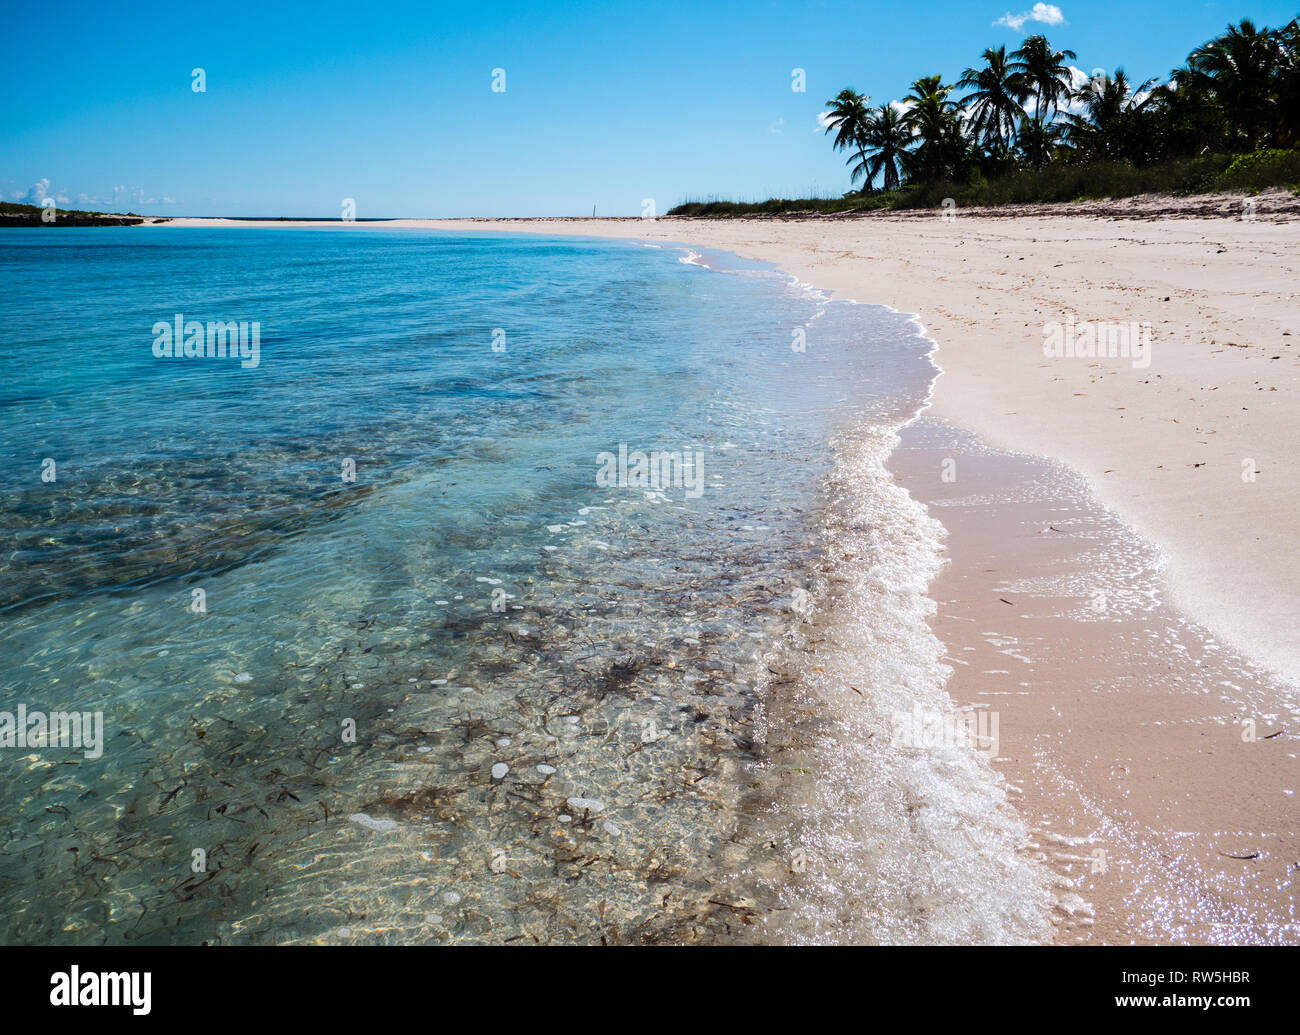 Las olas en la orilla de la playa tropical con palmeras, Twin Cove Beach, Costa Atlántica, Eleuthera Island, Las Bahamas, El Caribe. Foto de stock